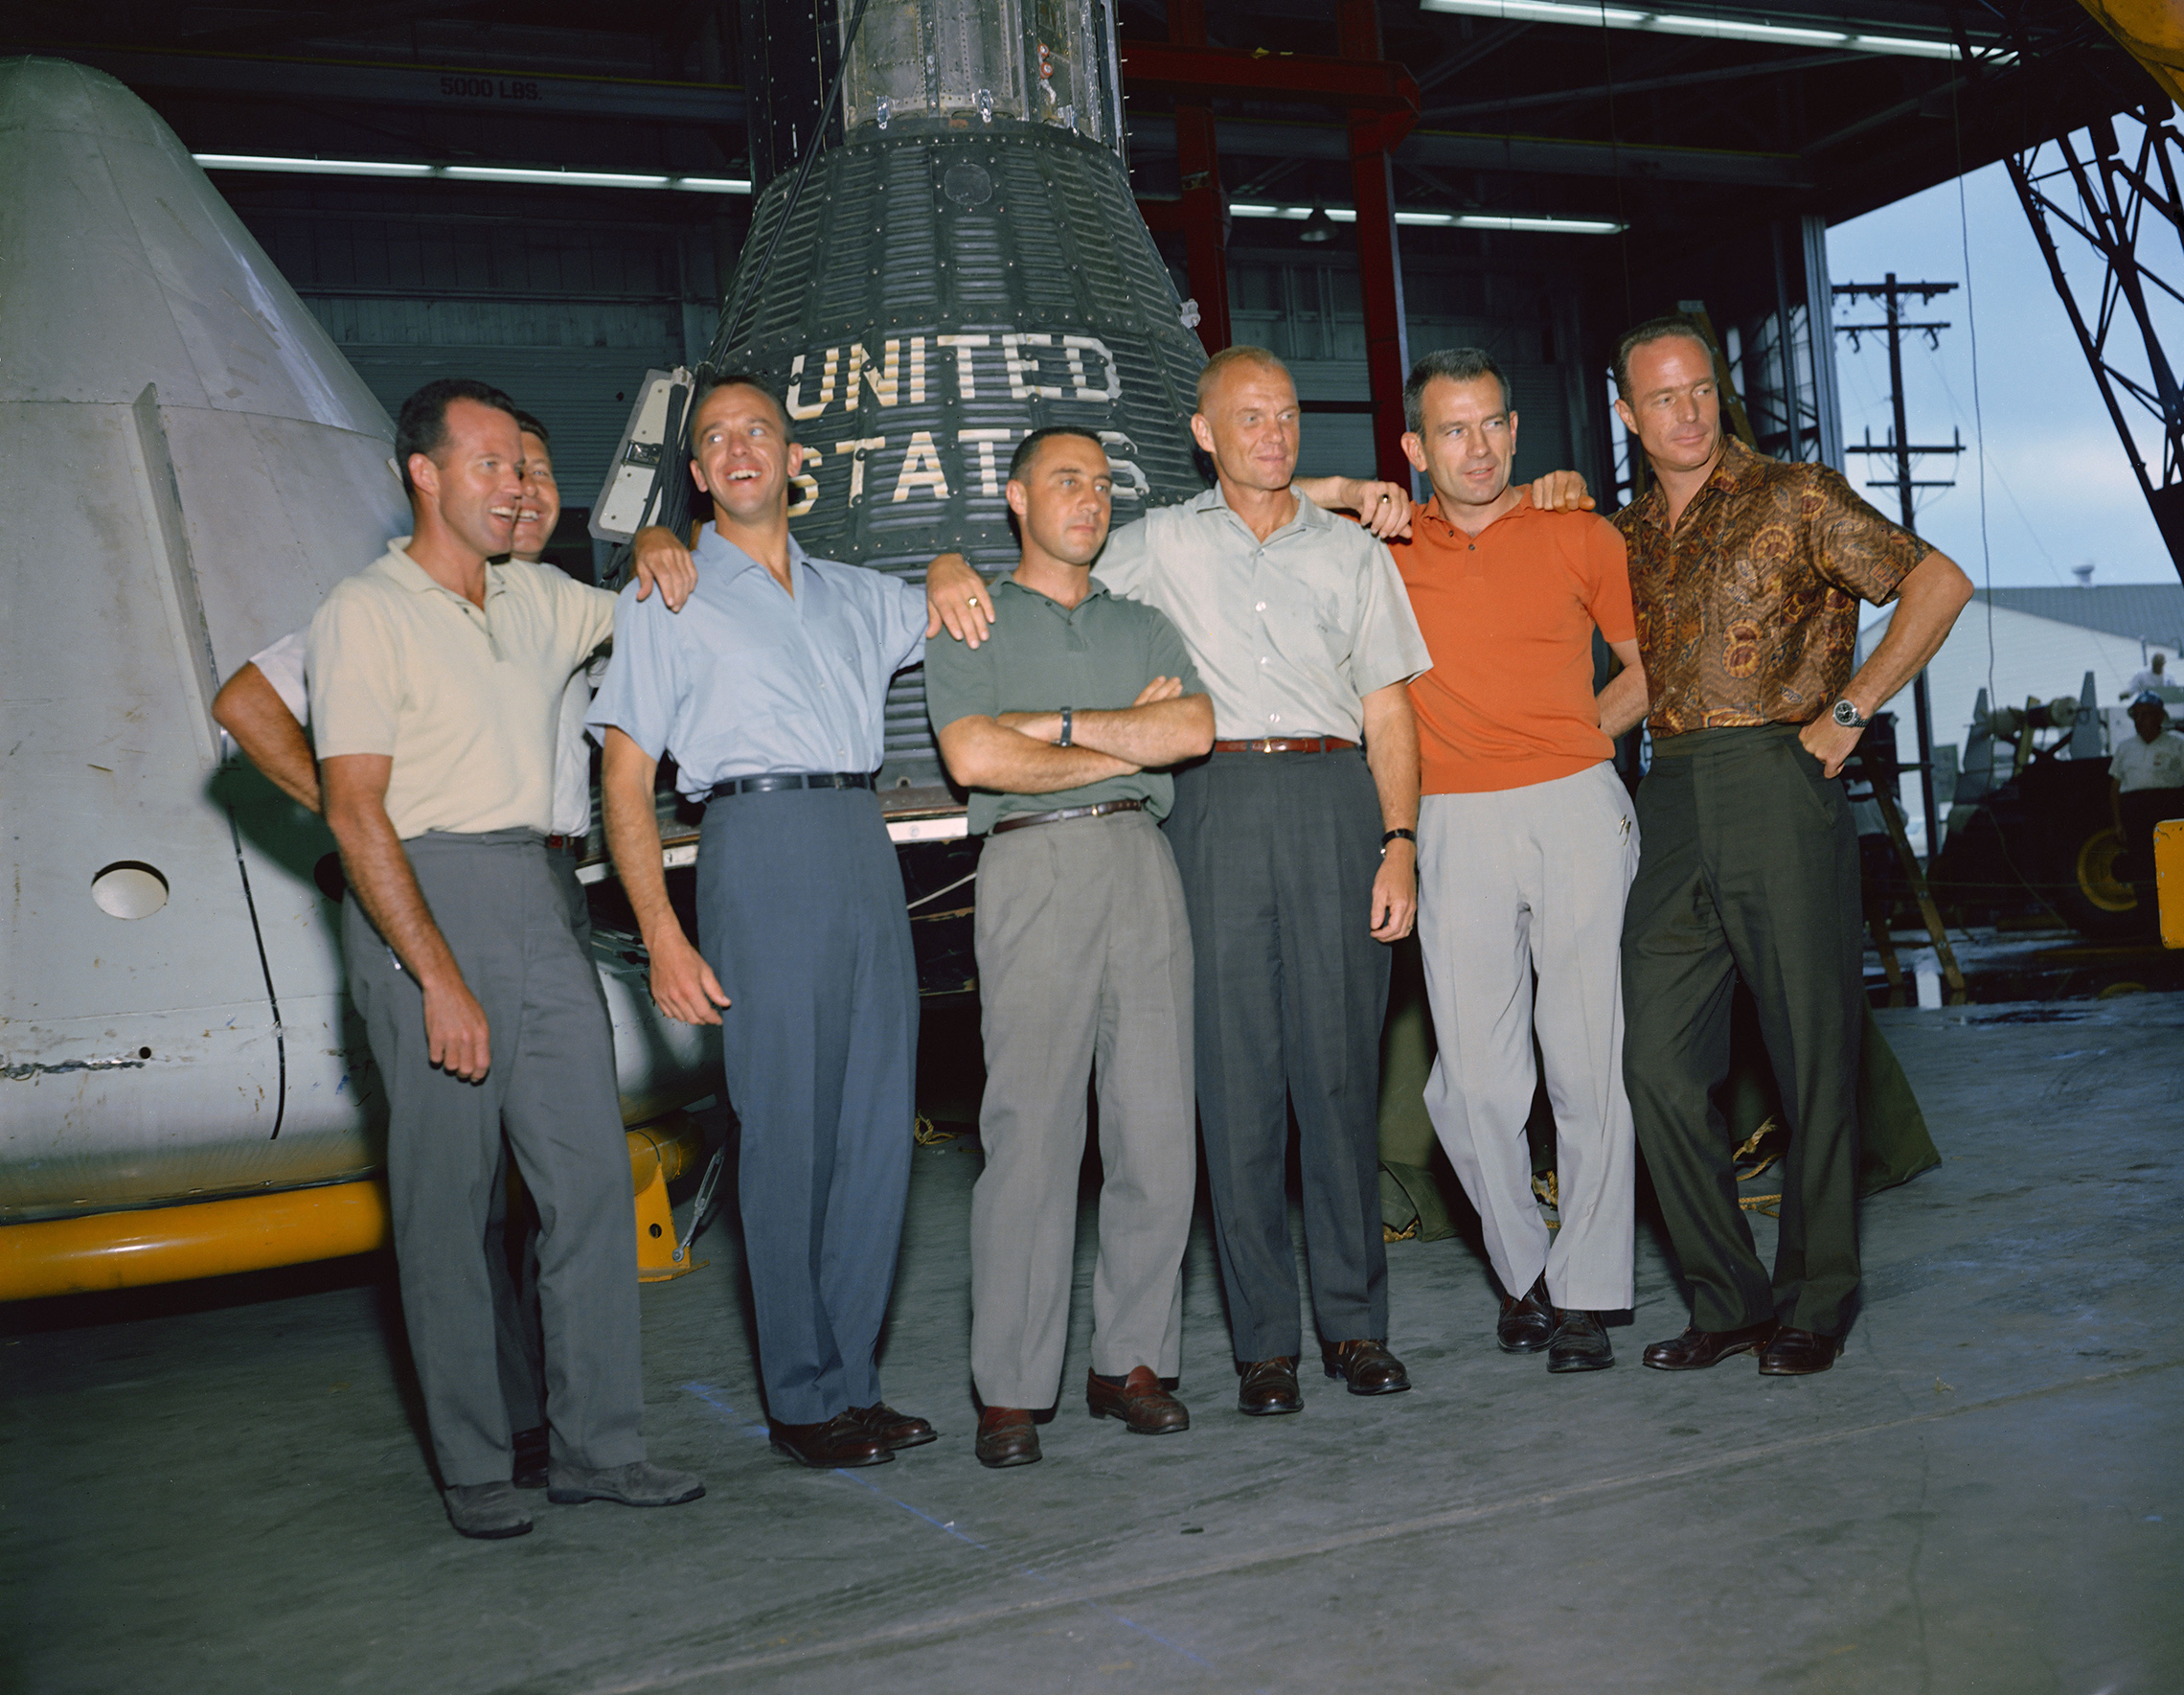 április 9-én, 1959, a NASA első adminisztrátora, Dr. Keith Glennan, bejelentette a nevét az Ügynökség első csoportja űrhajósok egy sajtótájékoztatón Washingtonban, D. C. most ismert, mint az eredeti hét, köztük három haditengerészeti aviators, M. Scott Carpenter, Walter M. Schirra Jr., és Alan B. Shepard a légierő három pilótája, L. Gordon Cooper Jr., Virgil I. (Gus) Grissom és Donald K. (Deke) Slayton; együtt Tengerészgyalogság pilóta John H. Glenn Jr. ez a csoportkép az eredeti Mercury űrhajósokról 1963 júniusában készült a Manned Spacecraft Center (MSC), most Johnson Space Center, ban ben Houston, Texas. Az űrhajósok balról jobbra: Cooper, Schirra, Shepard, Grissom, Glenn, Slayton és Carpenter. A Mercury projekt lett a NASA első nagyobb vállalkozása. A program célja az volt, hogy emberi besorolású űrhajót helyezzenek a Föld körüli pályára, megfigyeljék az űrhajósok teljesítményét ilyen körülmények között, és biztonságosan visszaszerezzék az űrhajót és az űrhajót. A Mercury repülések bebizonyították, hogy az emberek képesek élni és dolgozni az űrben, és előkészítették az utat a Gemini és az Apollo program, valamint minden további emberi űrrepülés számára. (NASA)'s first administrator, Dr. Keith Glennan, announced the names of the agency's first group of astronauts at a news conference in Washington, D.C. Now known as the "Original Seven," they included three Naval aviators, M. Scott Carpenter, Walter M. Schirra Jr., and Alan B. Shepard Jr.; three Air Force pilots, L. Gordon Cooper Jr., Virgil I. (Gus) Grissom, and Donald K. (Deke) Slayton; along with Marine Corps aviator John H. Glenn Jr. This group photo of the original Mercury astronauts was taken in June 1963 at the Manned Spacecraft Center (MSC), now Johnson Space Center, in Houston, Texas. The astronauts are, left to right: Cooper, Schirra, Shepard, Grissom, Glenn, Slayton and Carpenter. Project Mercury became NASA's first major undertaking. The objectives of the program were to place a human-rated spacecraft into orbit around Earth, observe the astronauts' performance in such conditions and safely recover the astronaut and the spacecraft. The Mercury flights proved that humans could live and work in space, and paved the way for the Gemini and Apollo programs as well as for all further human spaceflight. (NASA)